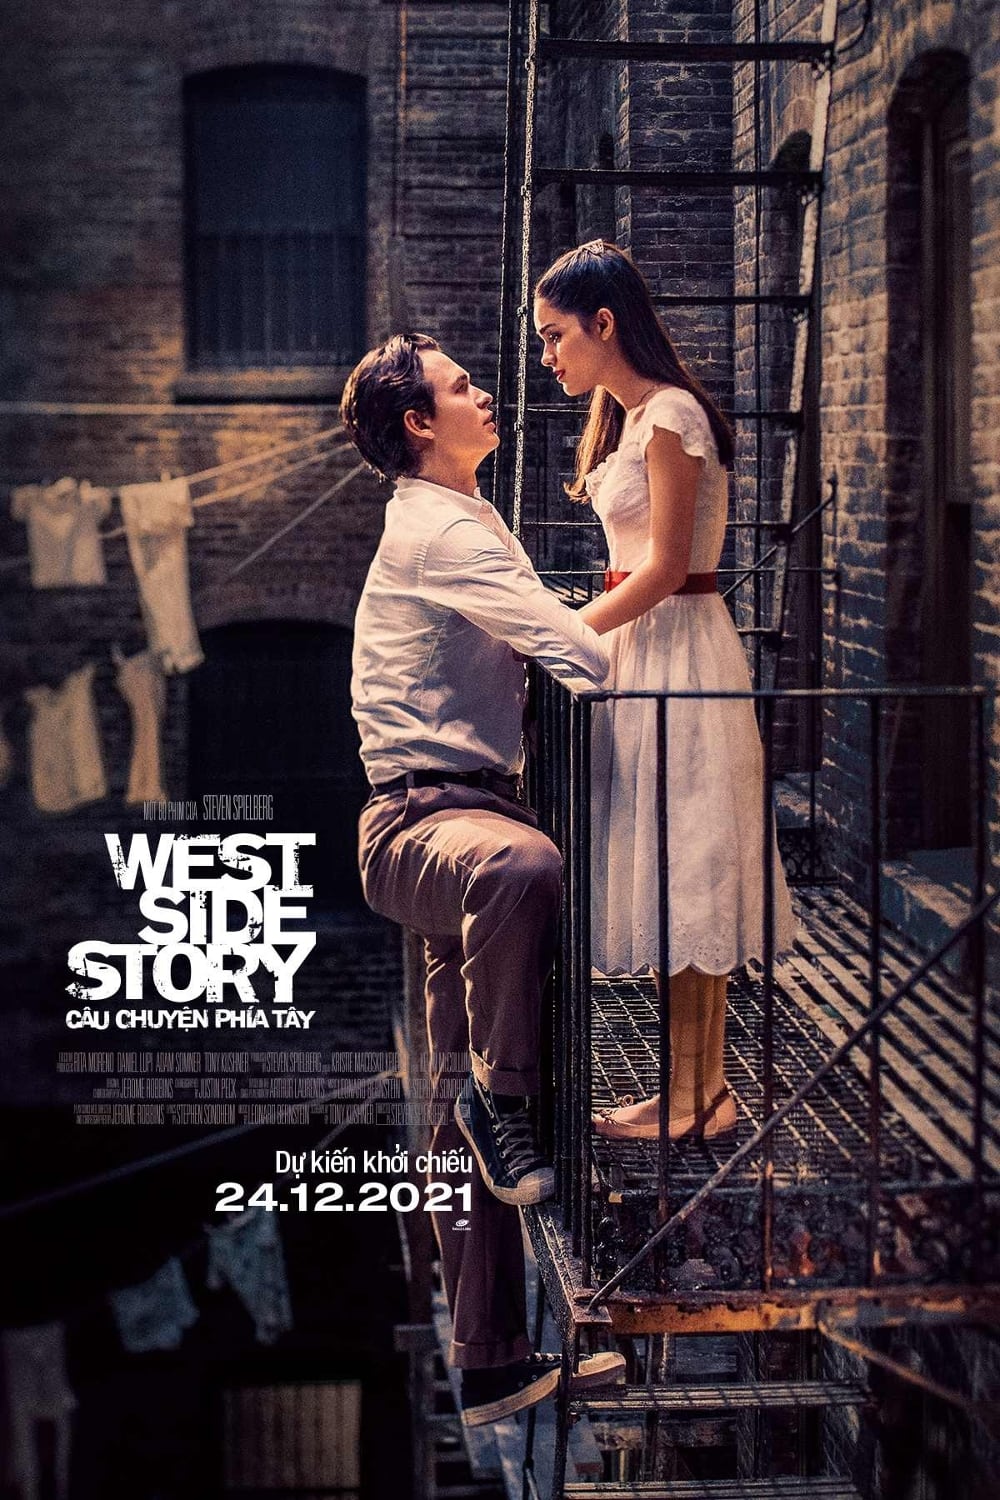 Câu Chuyện Phía Tây (West Side Story) [2021]